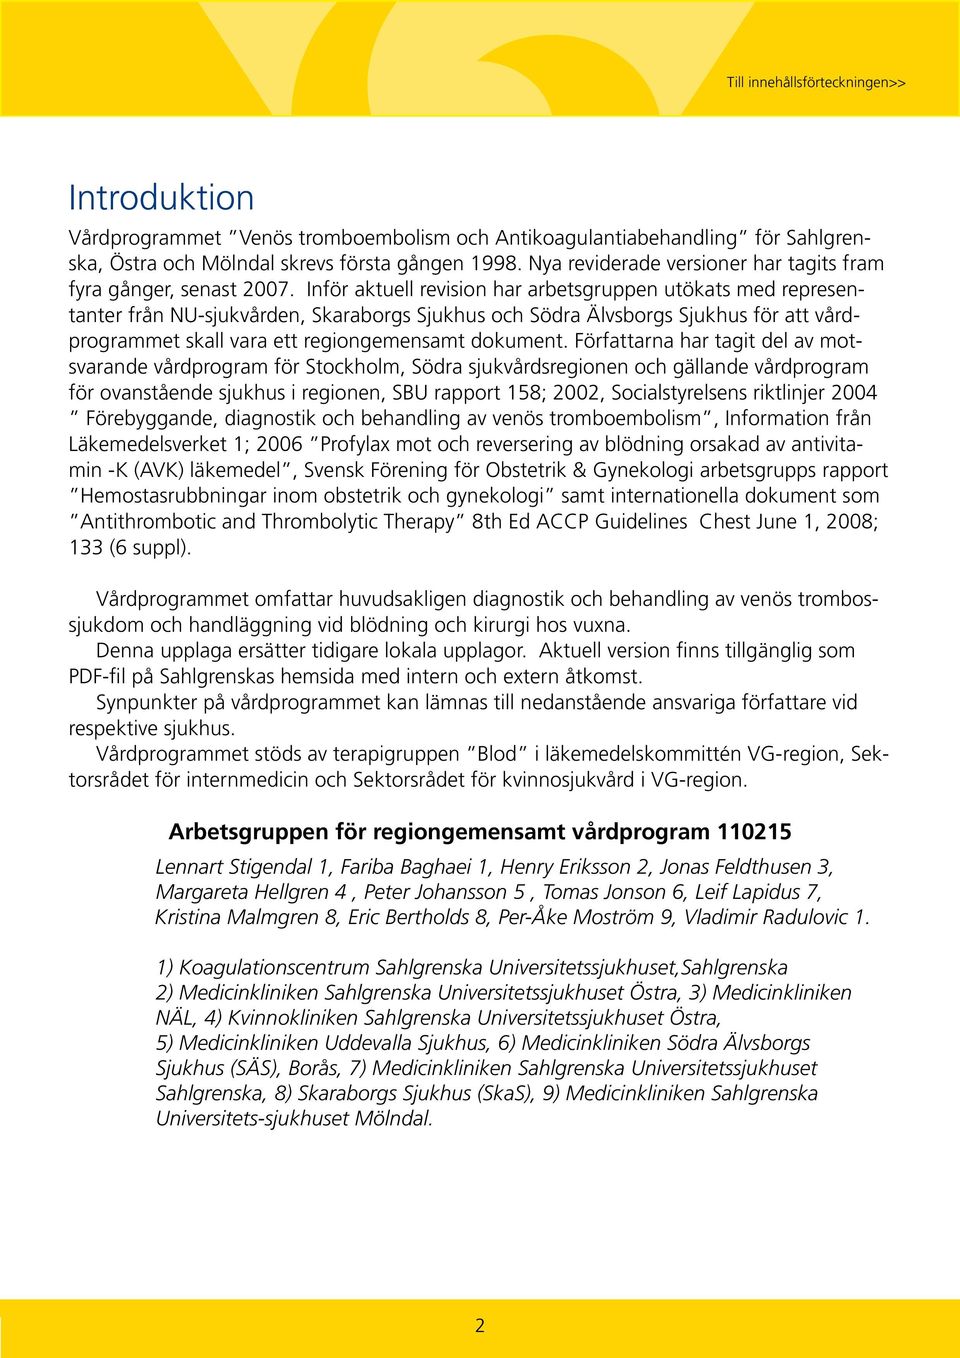 Inför aktuell revision har arbetsgruppen utökats med representanter från NU-sjukvården, Skaraborgs Sjukhus och Södra Älvsborgs Sjukhus för att vårdprogrammet skall vara ett regiongemensamt dokument.